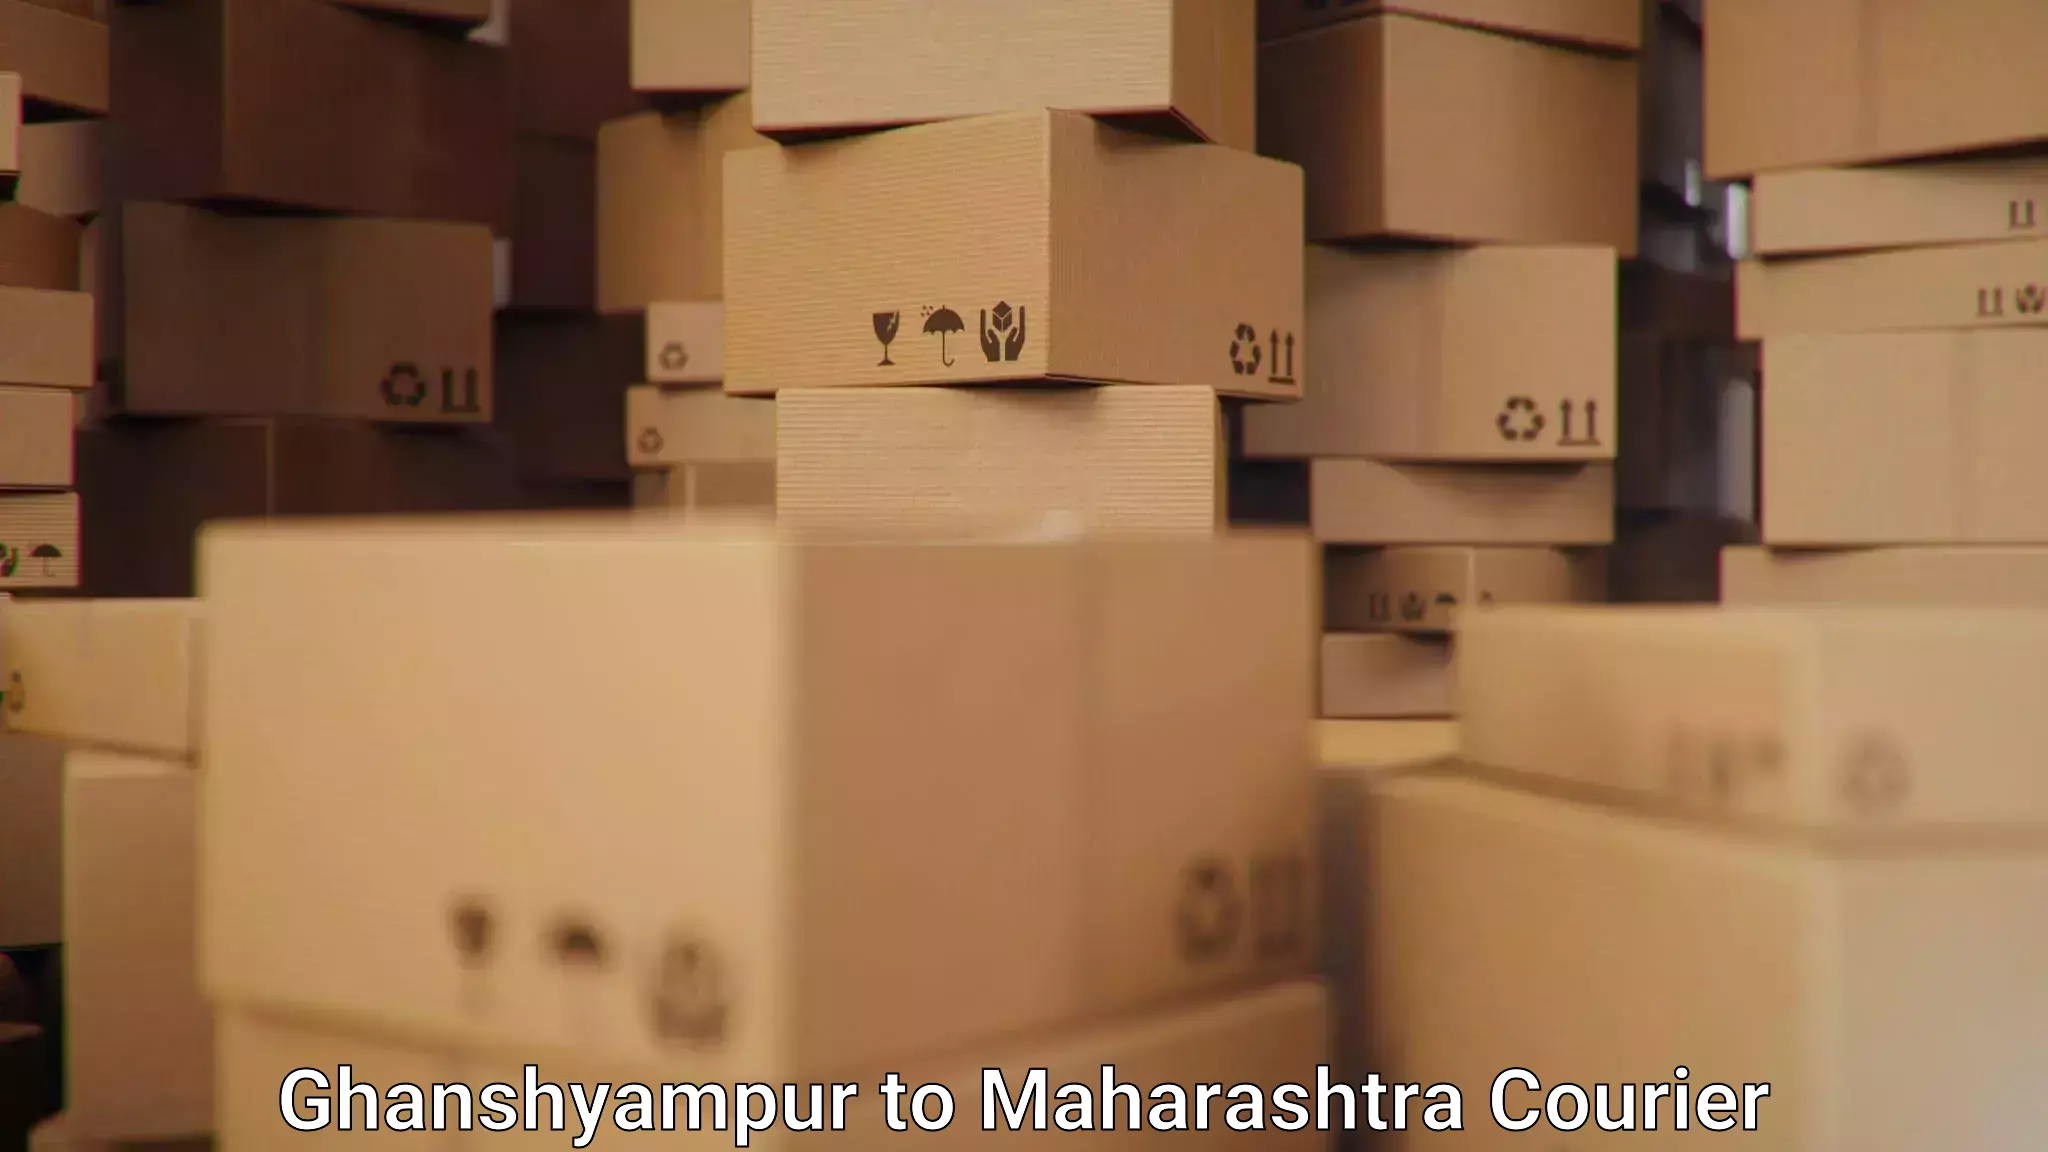 Bulk shipment in Ghanshyampur to Maharashtra